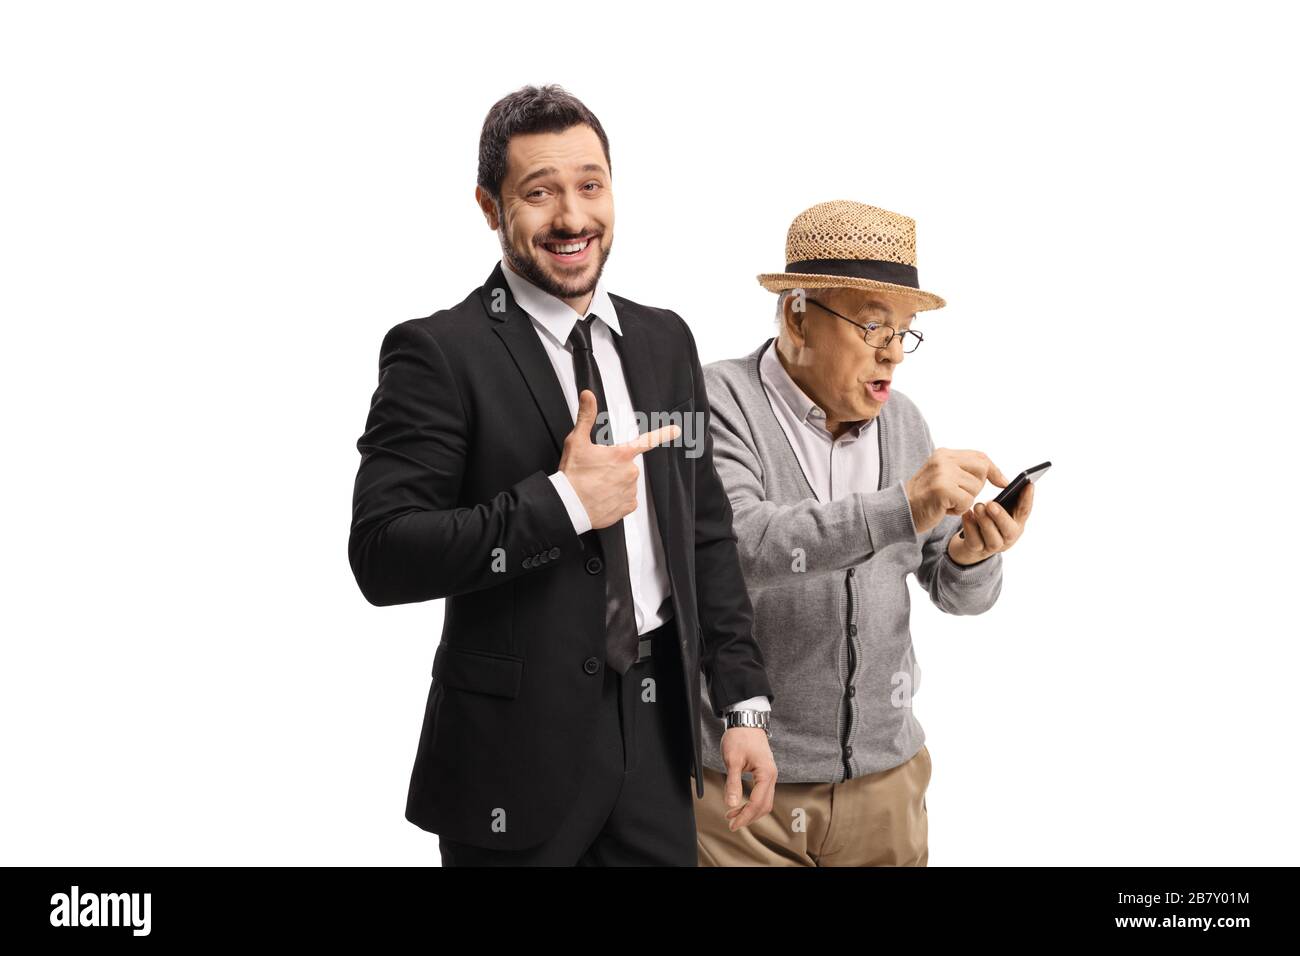 Jeune homme en costume riant et pointant vers un homme âgé avec un téléphone portable isolé sur fond blanc Banque D'Images